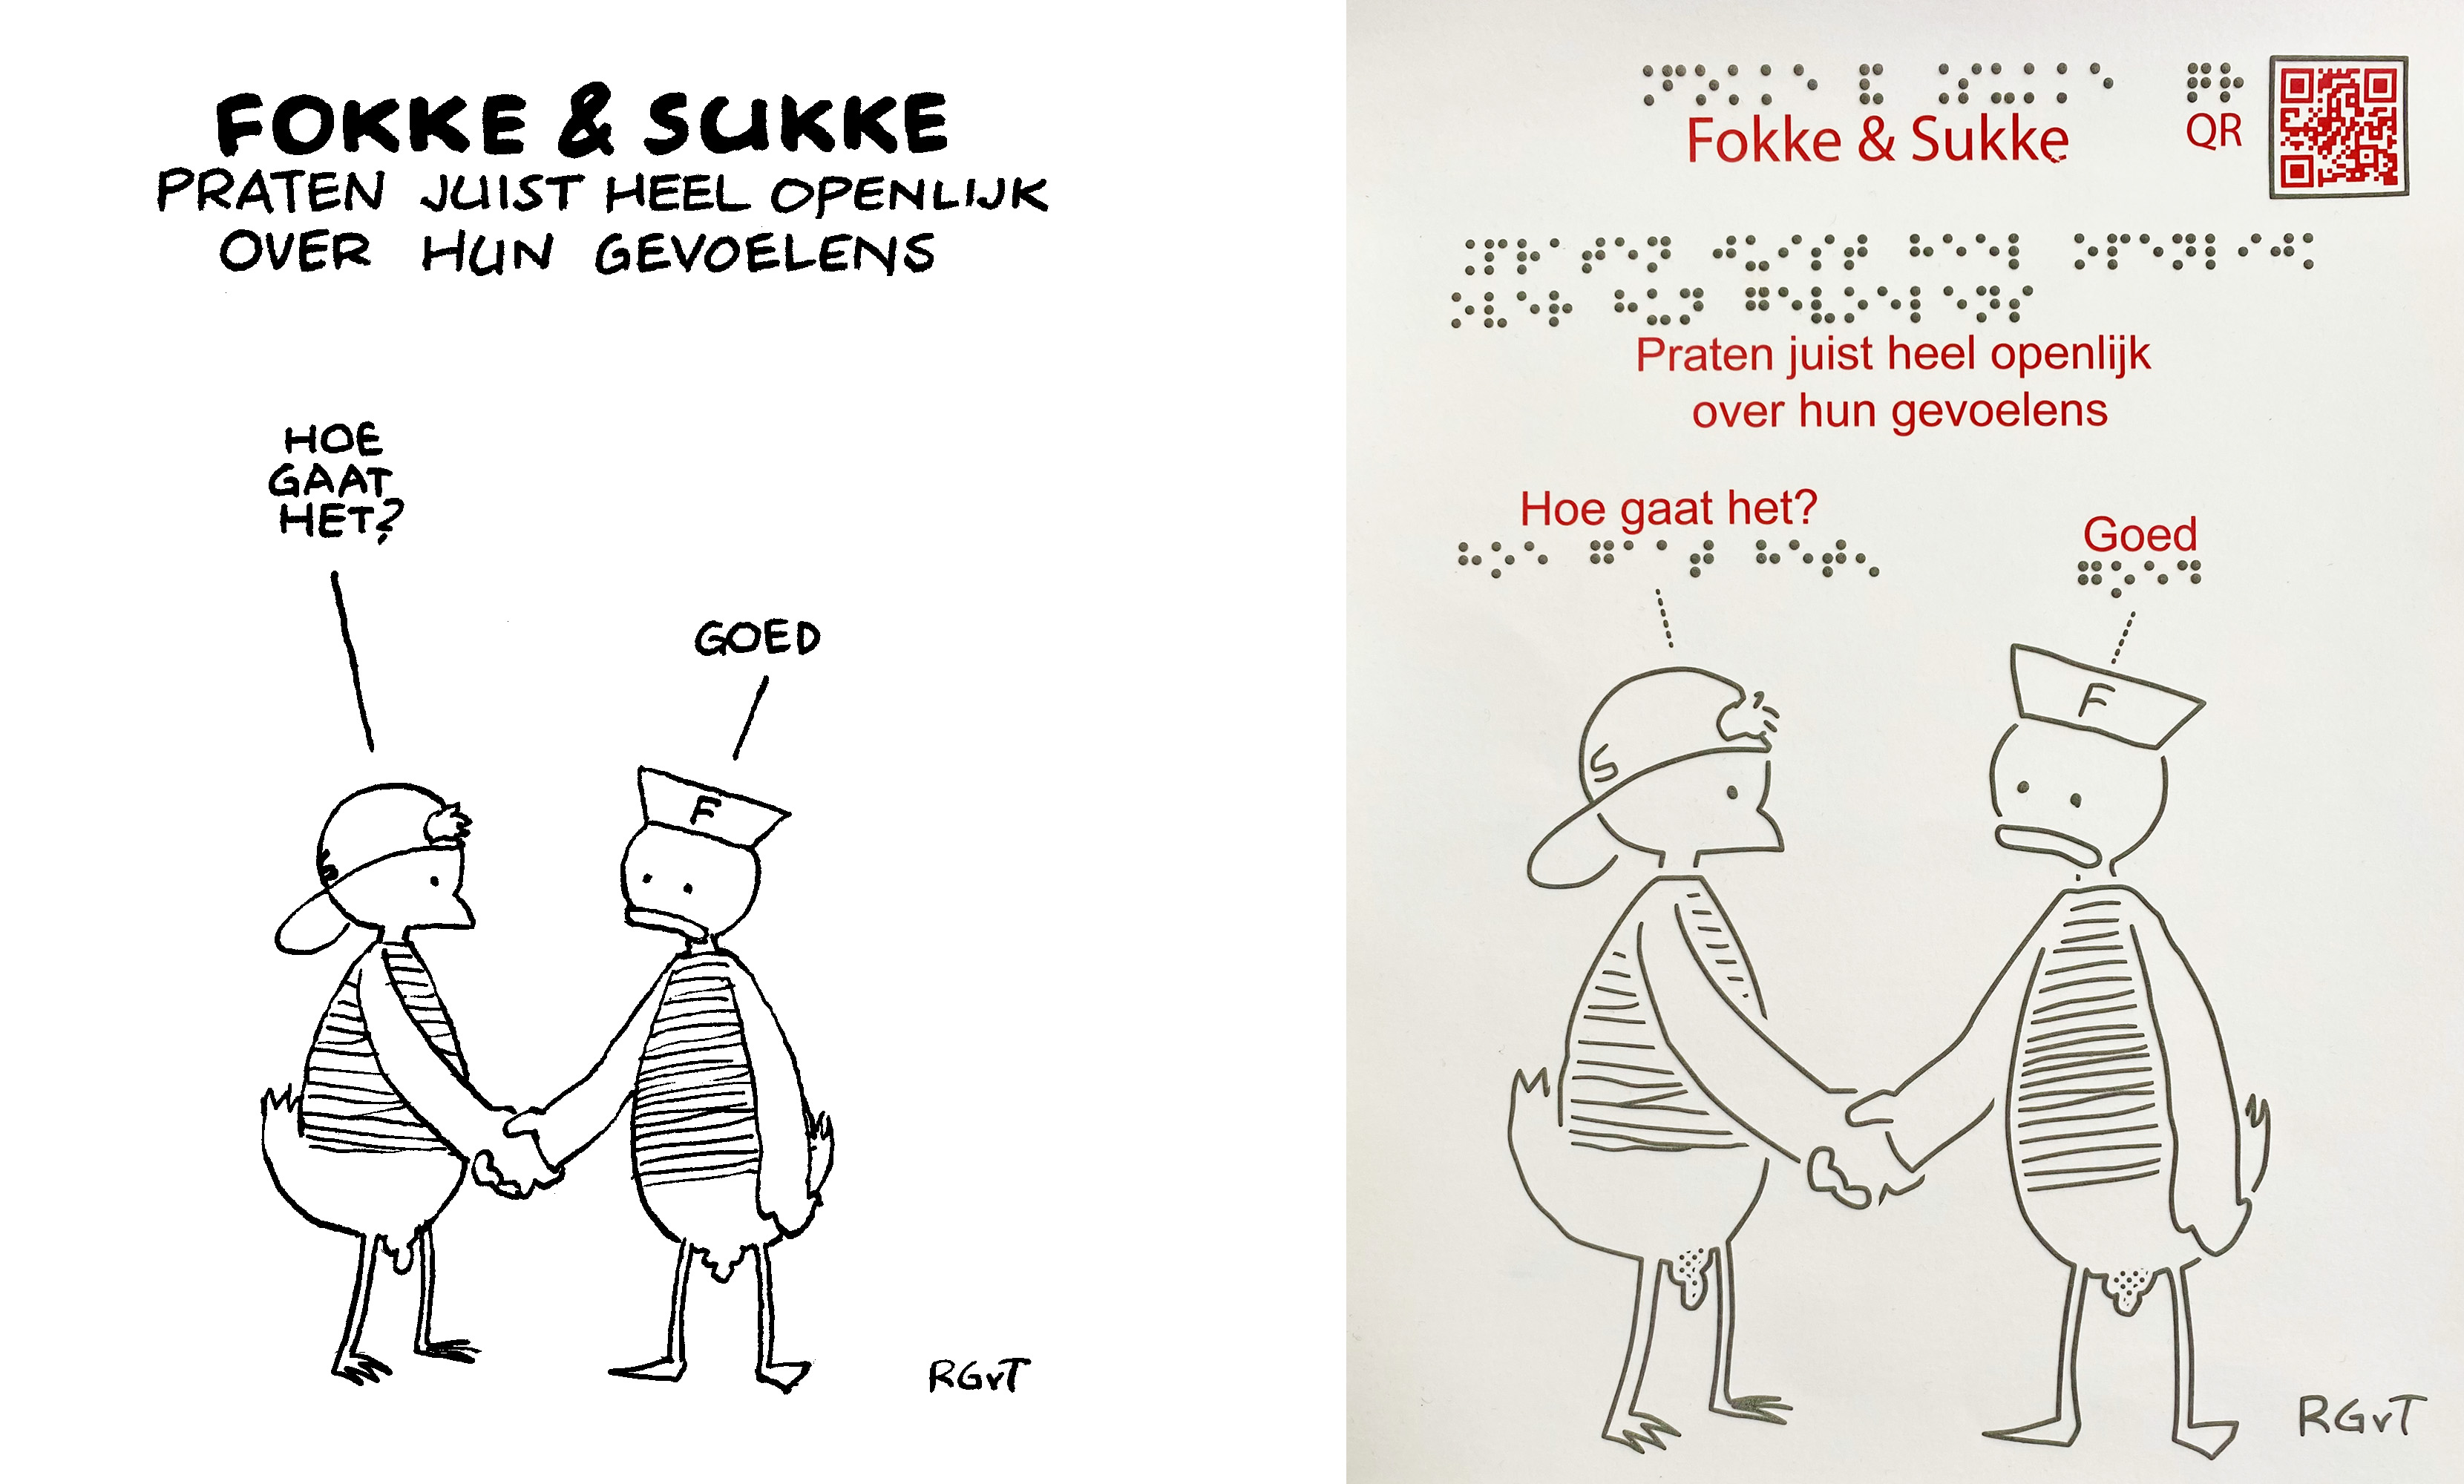 Links de originele Fokke&Sukke-cartoon, rechts de voelbare variant met reliëftekening, braille en QR-code voor beschrijving in audio